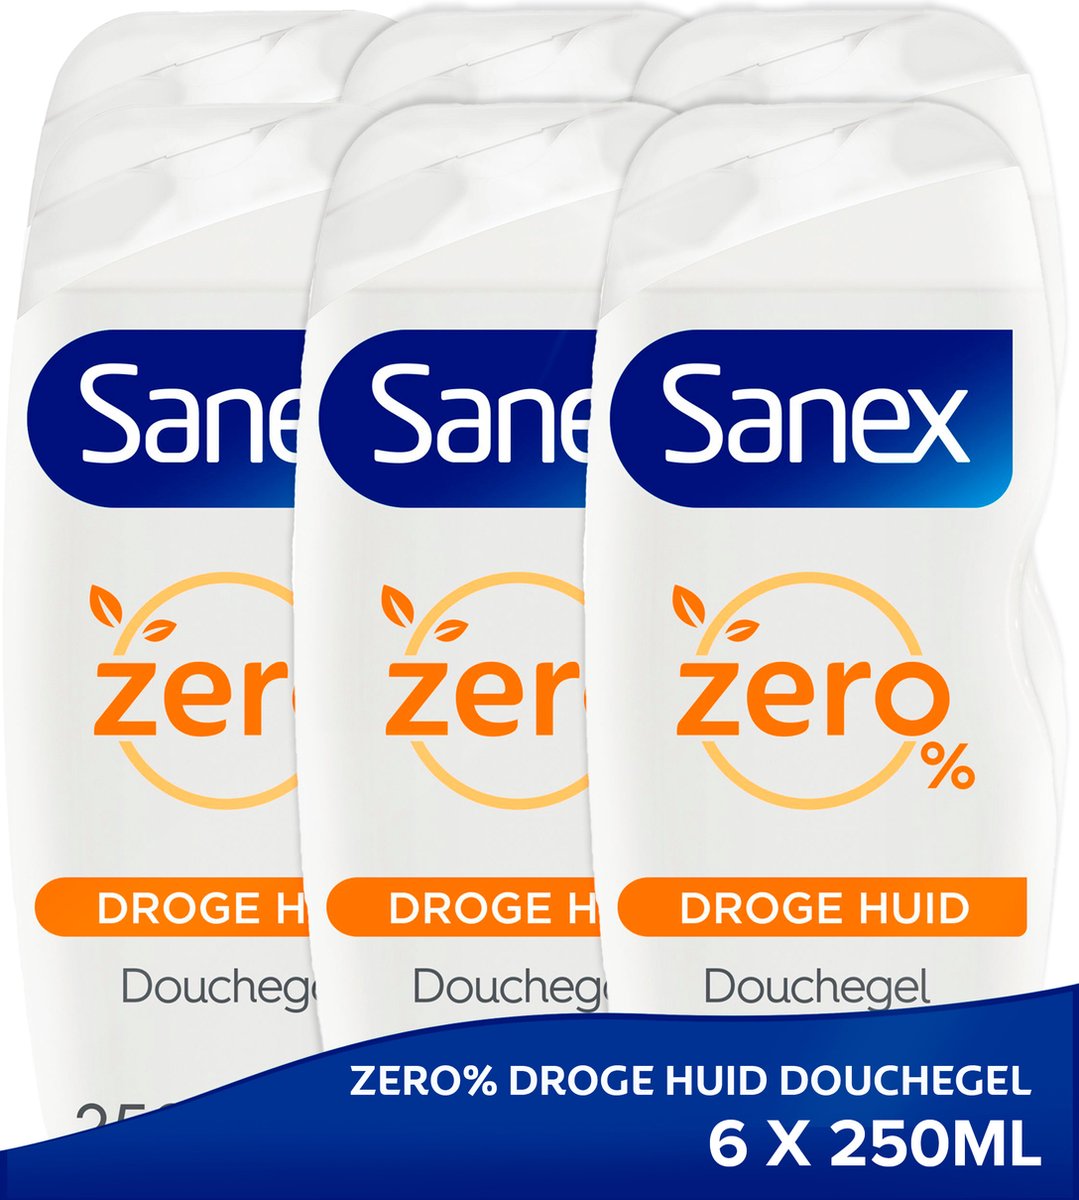 Sanex Zero% Droge Huid Douchegel - 6 x 250ml - Voordeelverpakking | bol.com